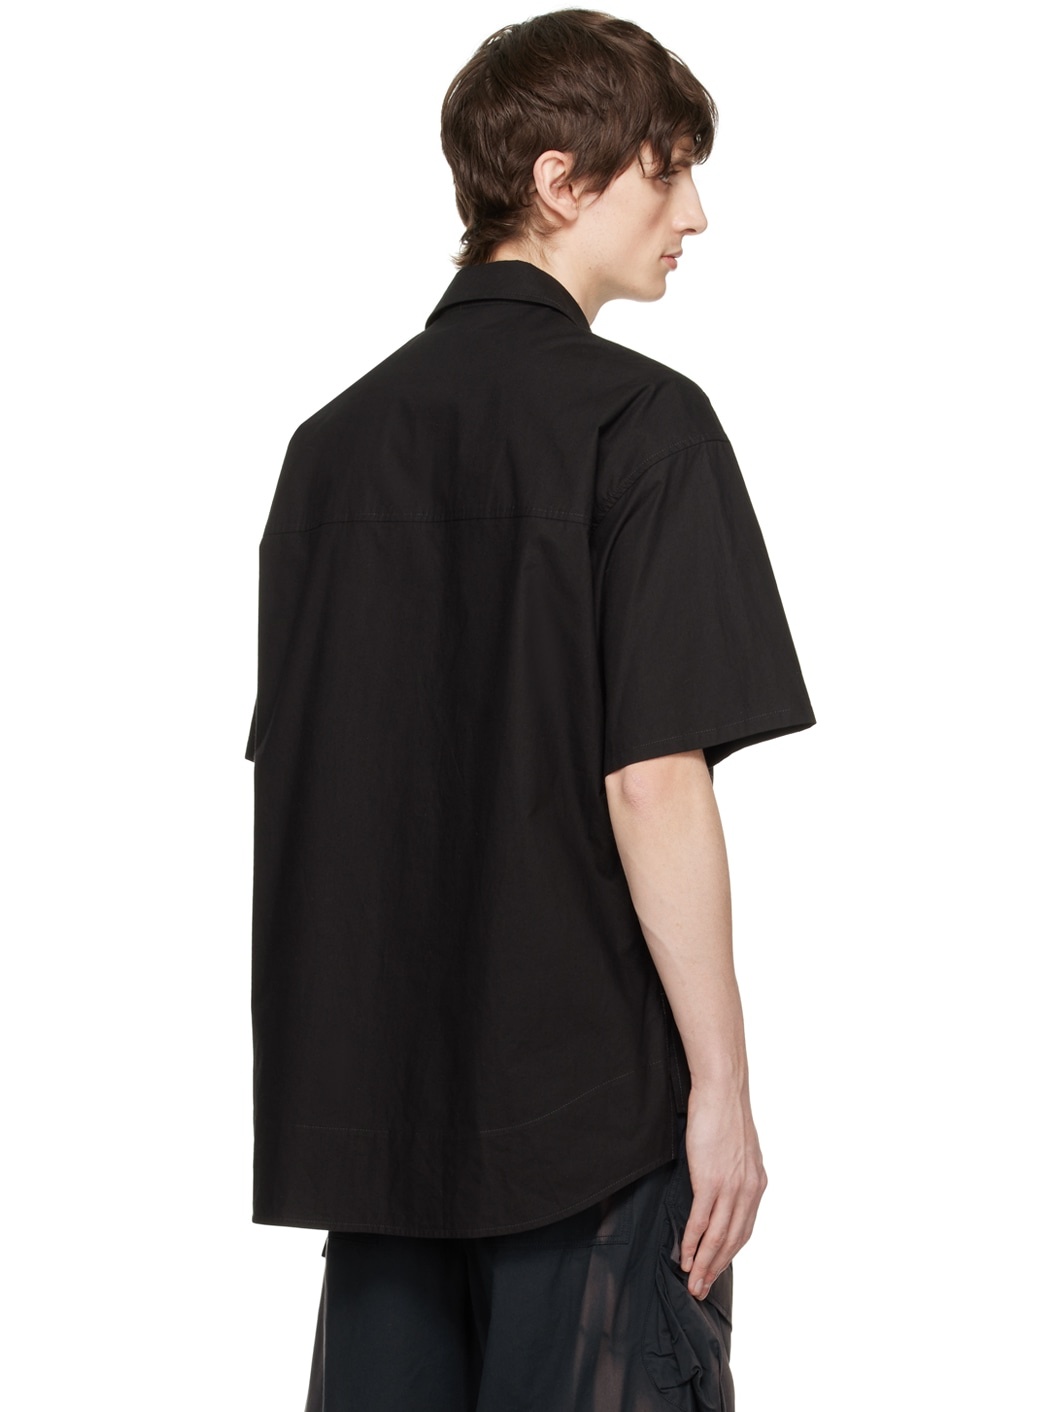 Black Oversized Shirt - 3